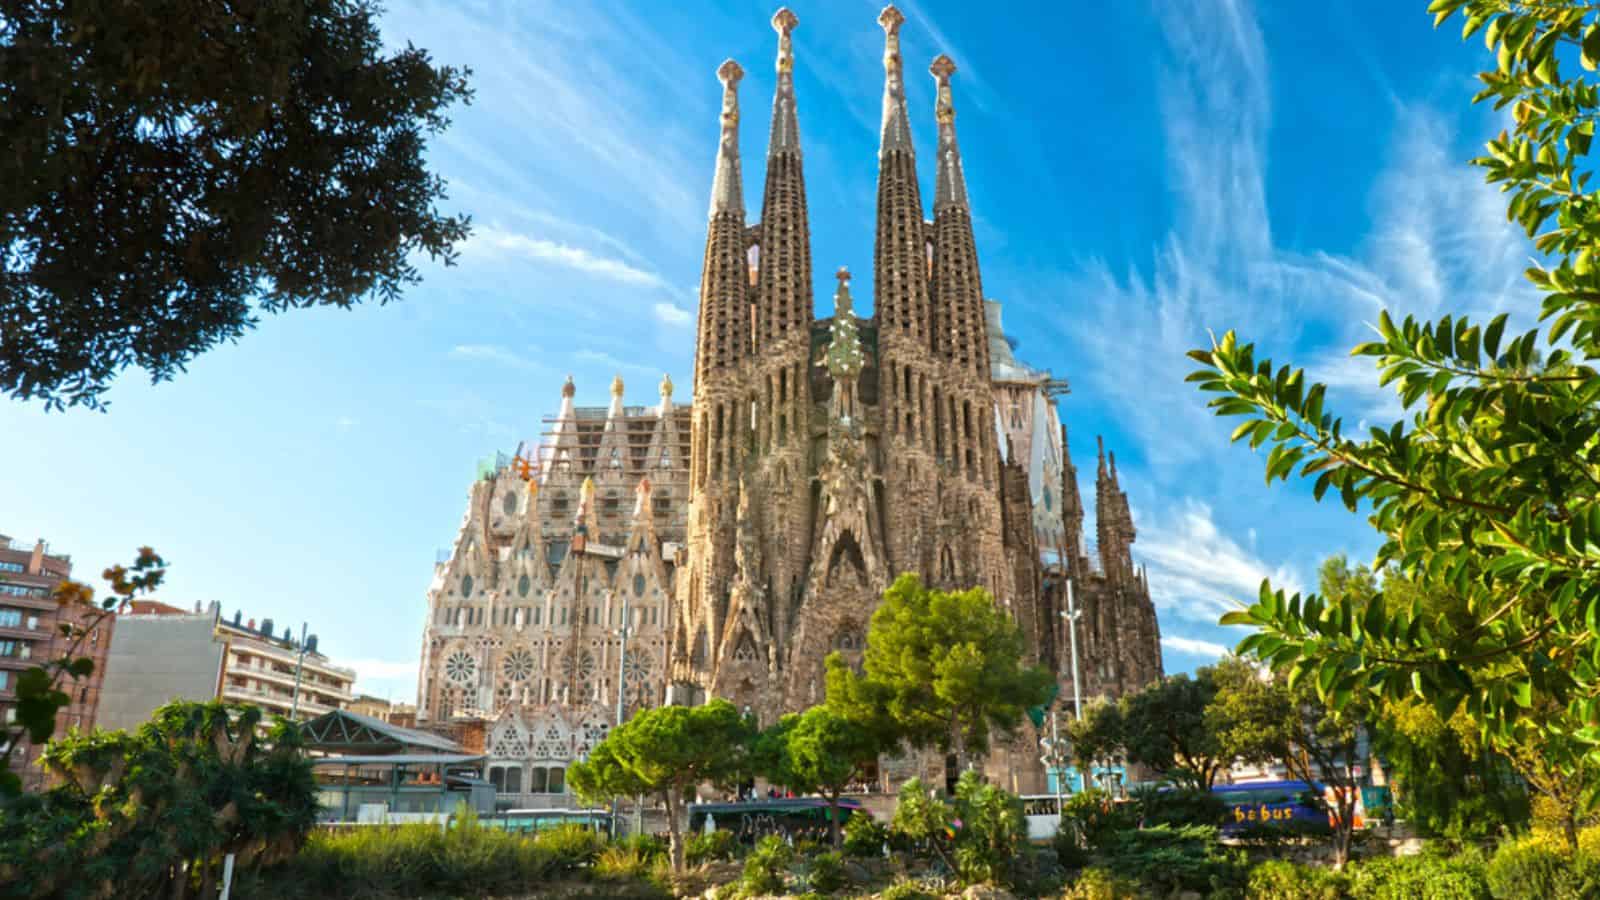  La Sagrada Familia - Barcelona Spain